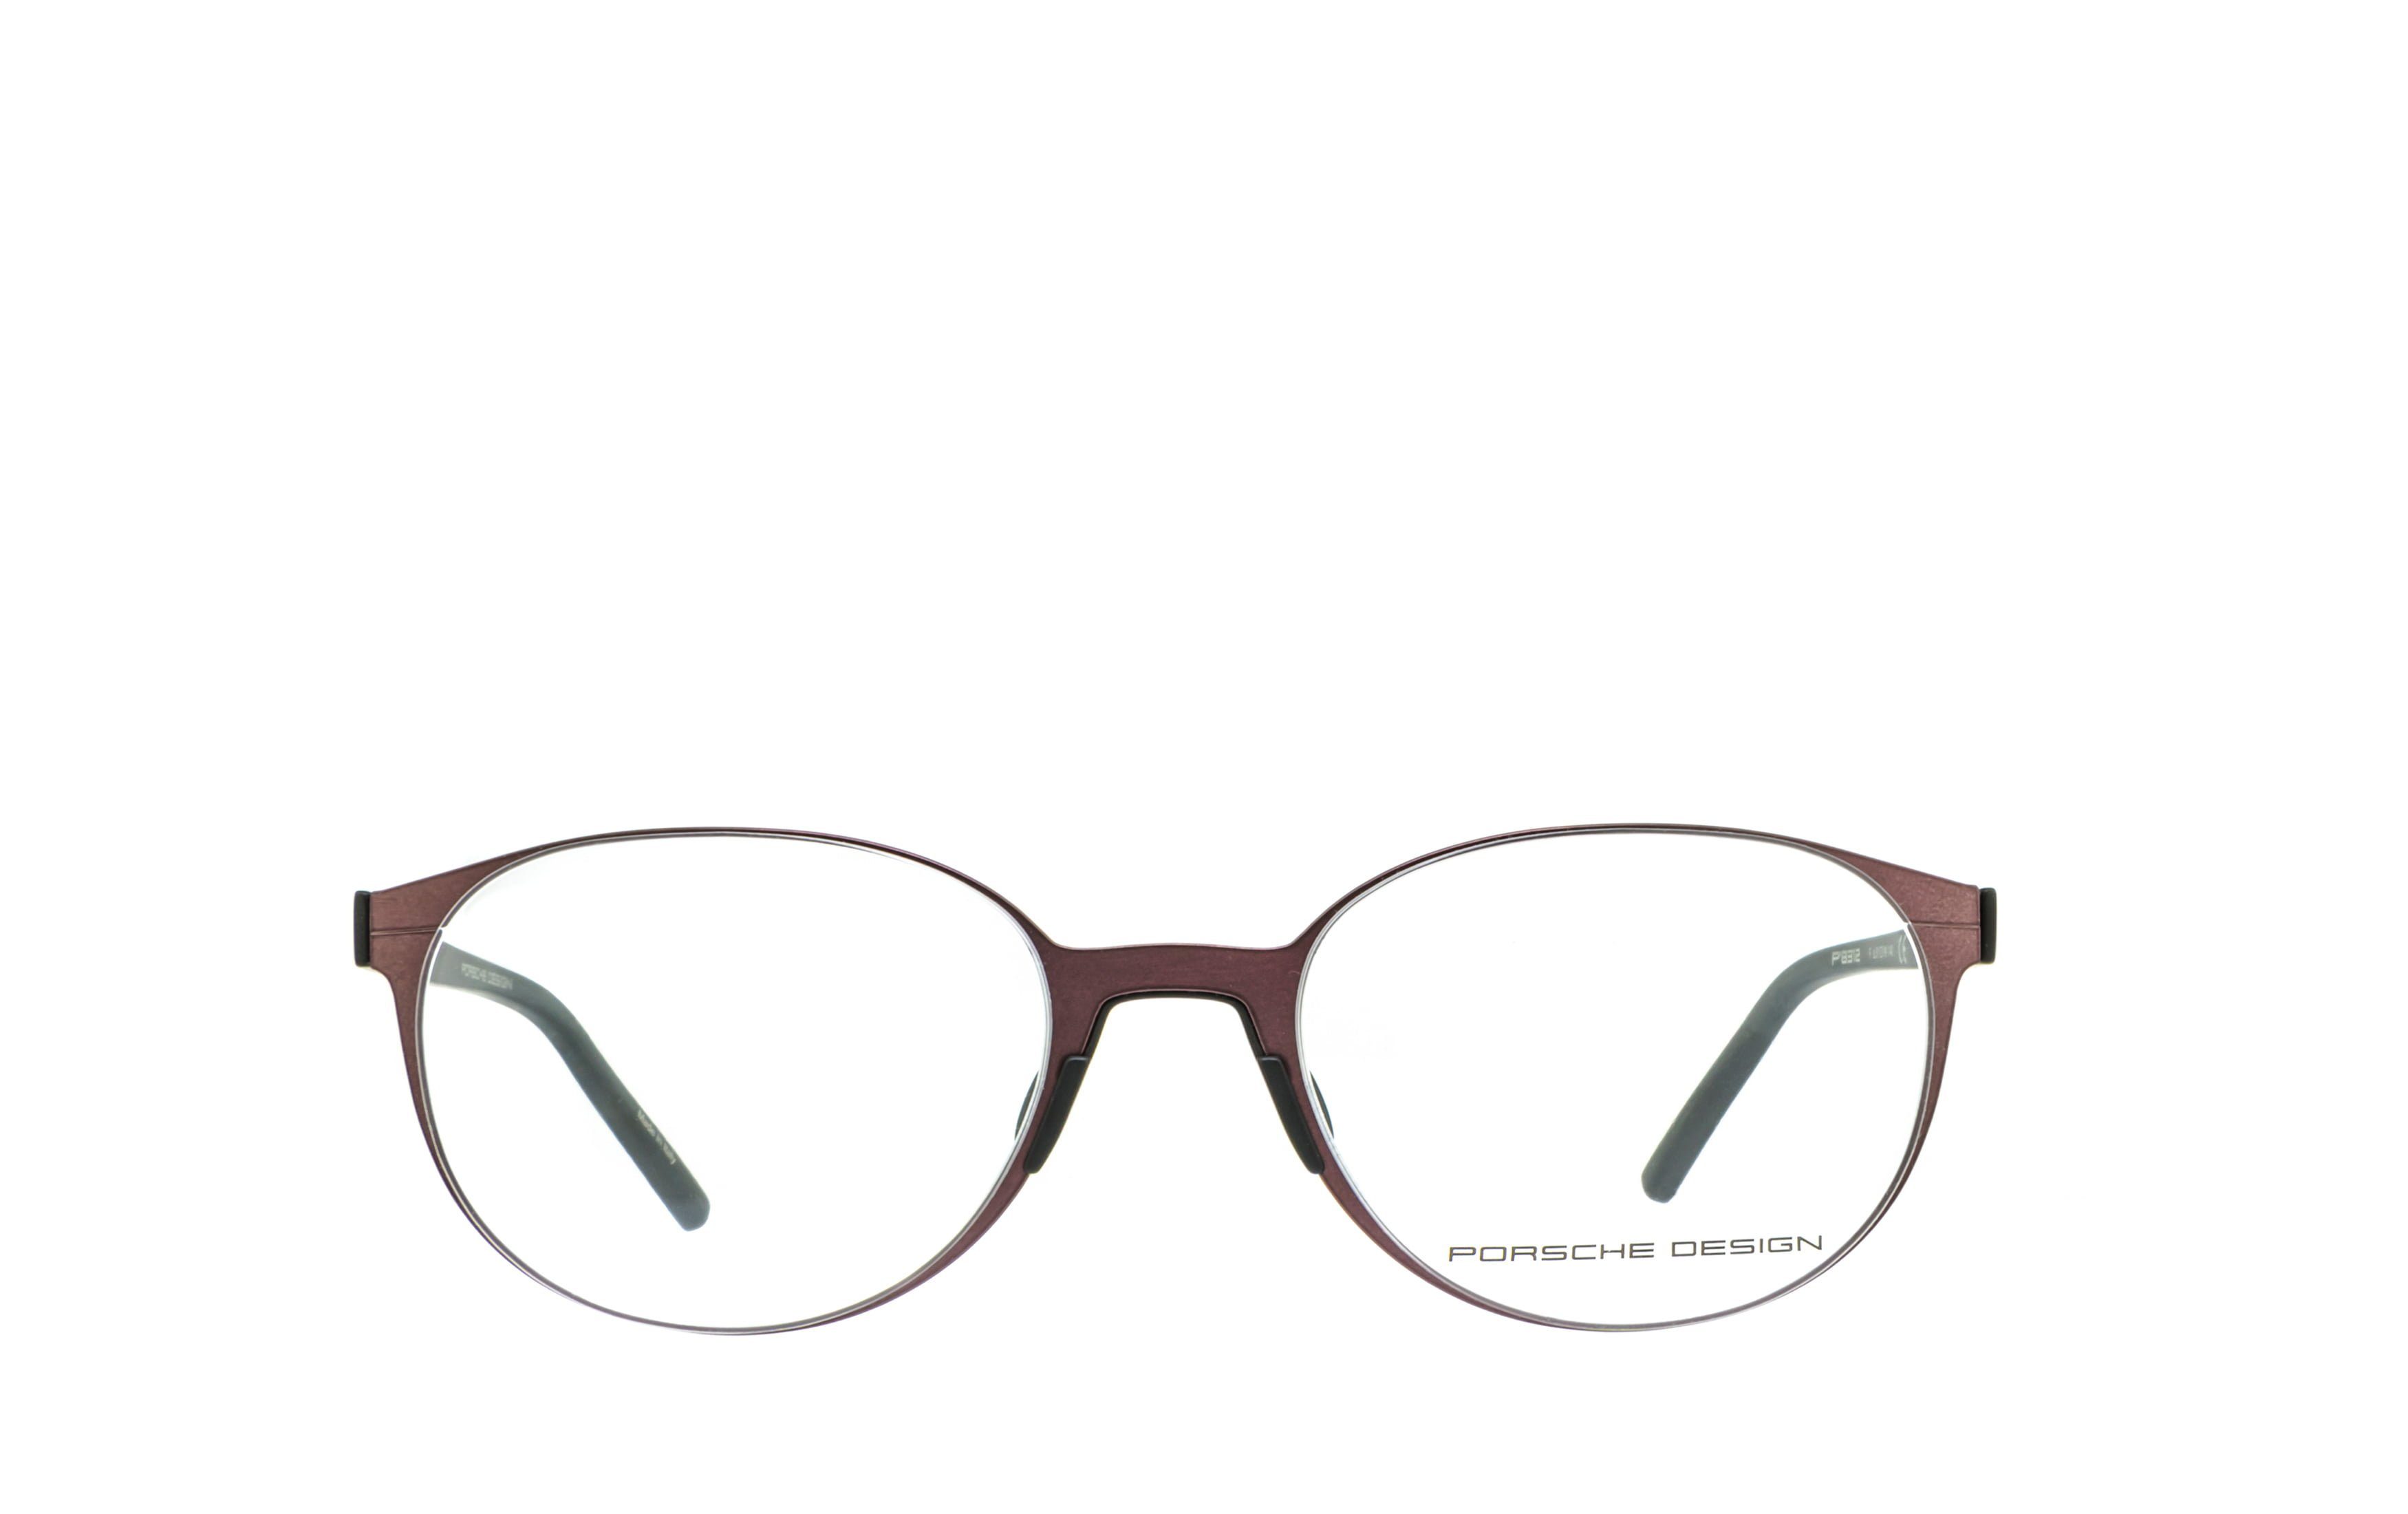 Brille Brille, Design Gamingbrille, ohne Bürobrille, Sehstärke Brille, PORSCHE Blaulichtfilter Bildschirmbrille, Blaulicht